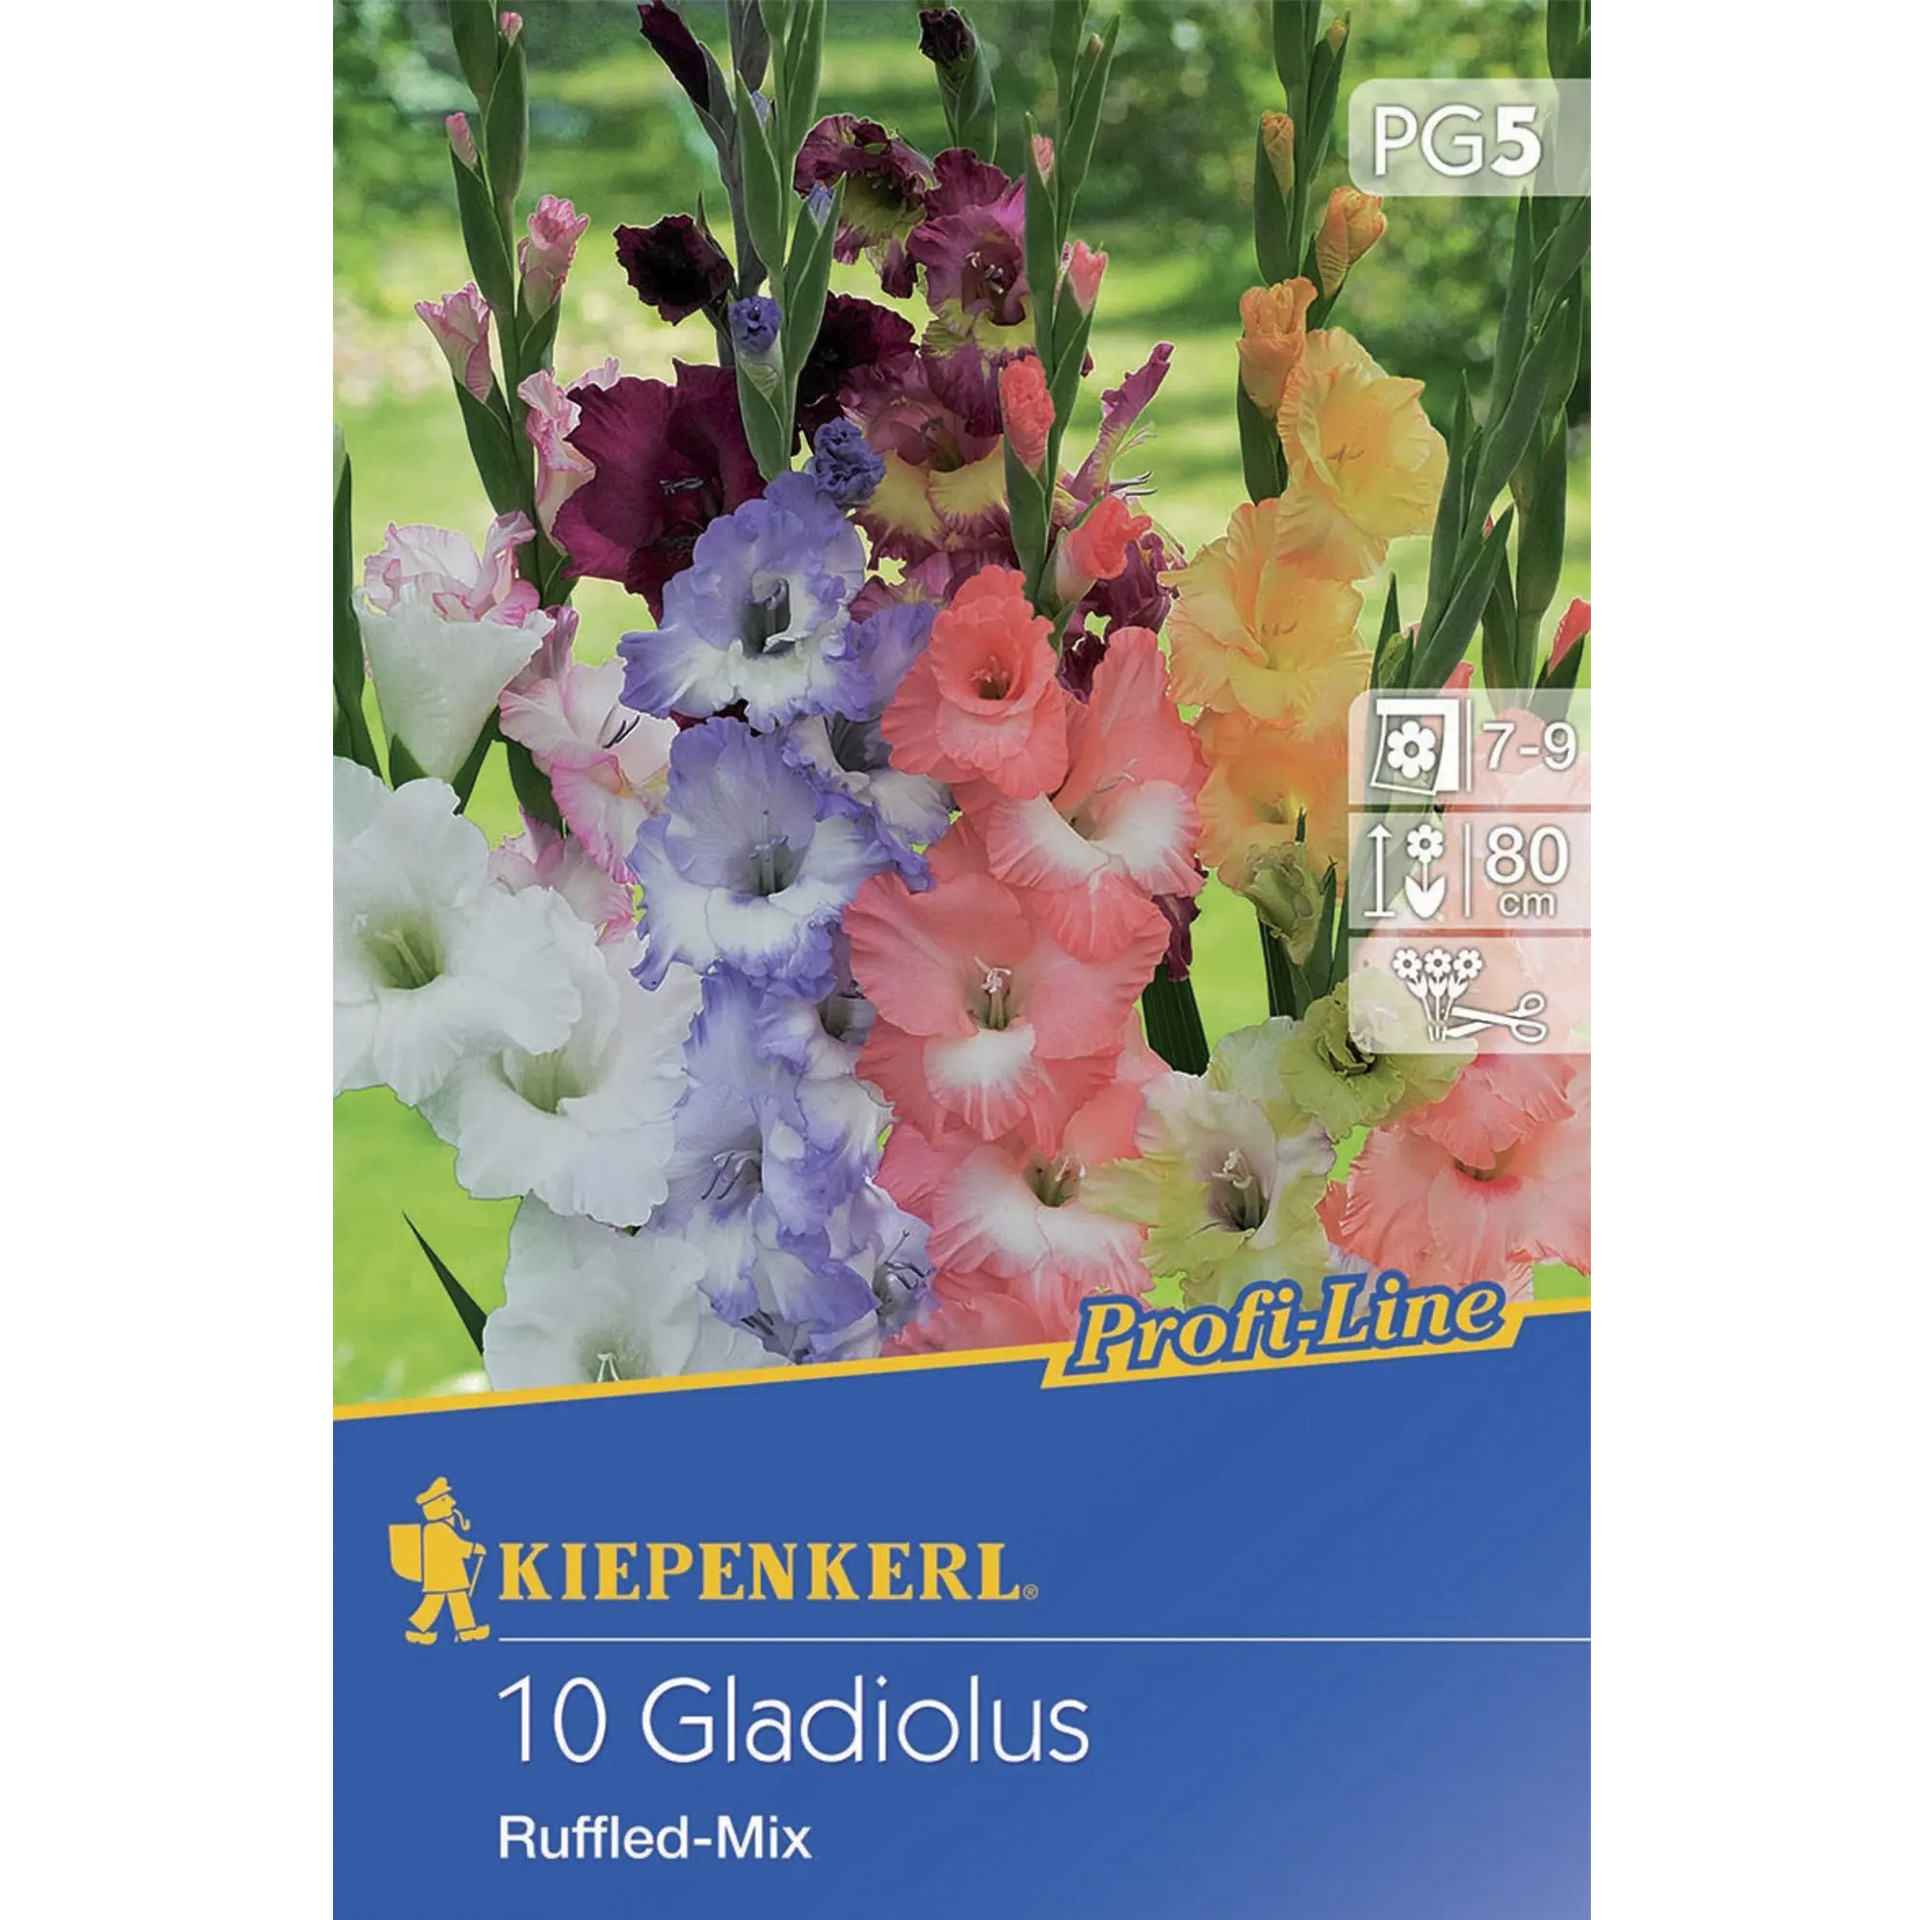 Verpackung mit farbenprächtigen Gladiolen